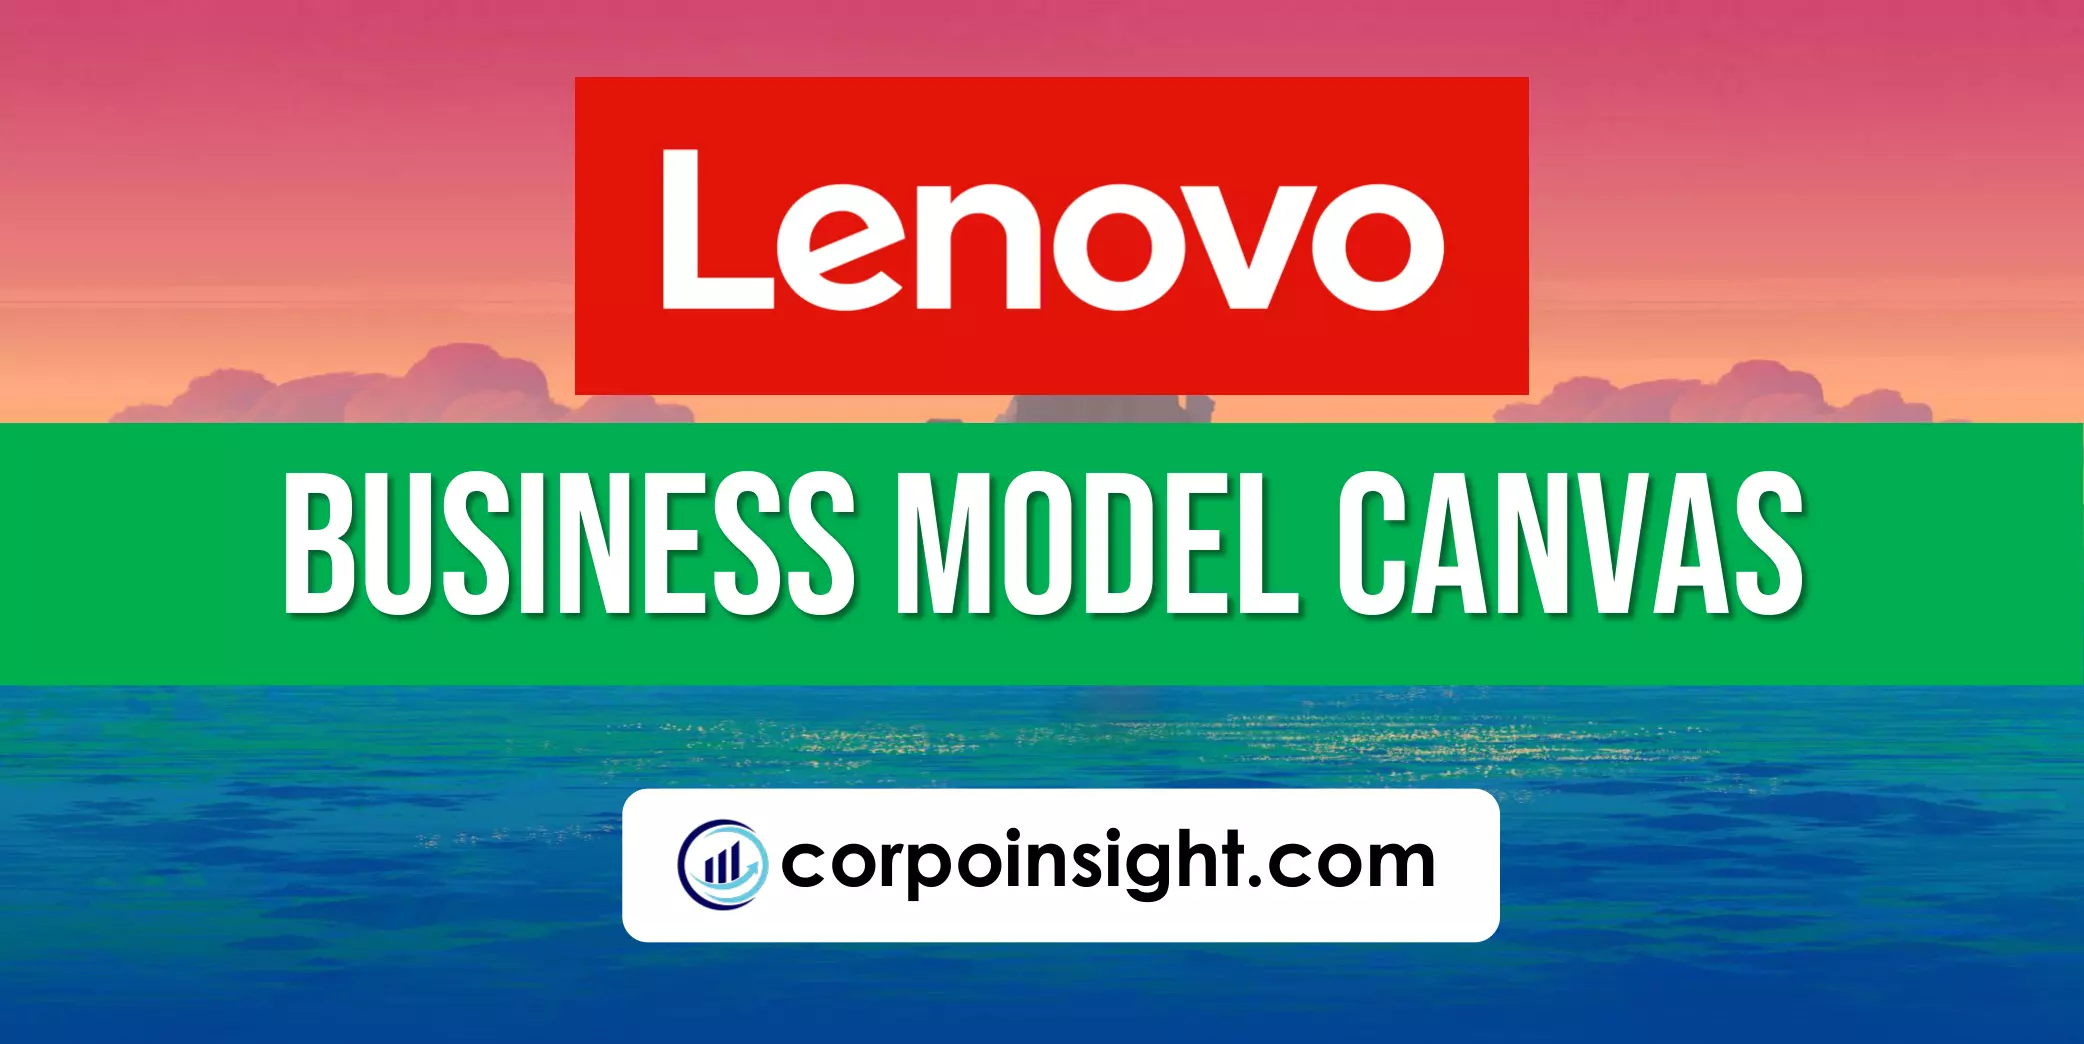 Lenovo Business Model